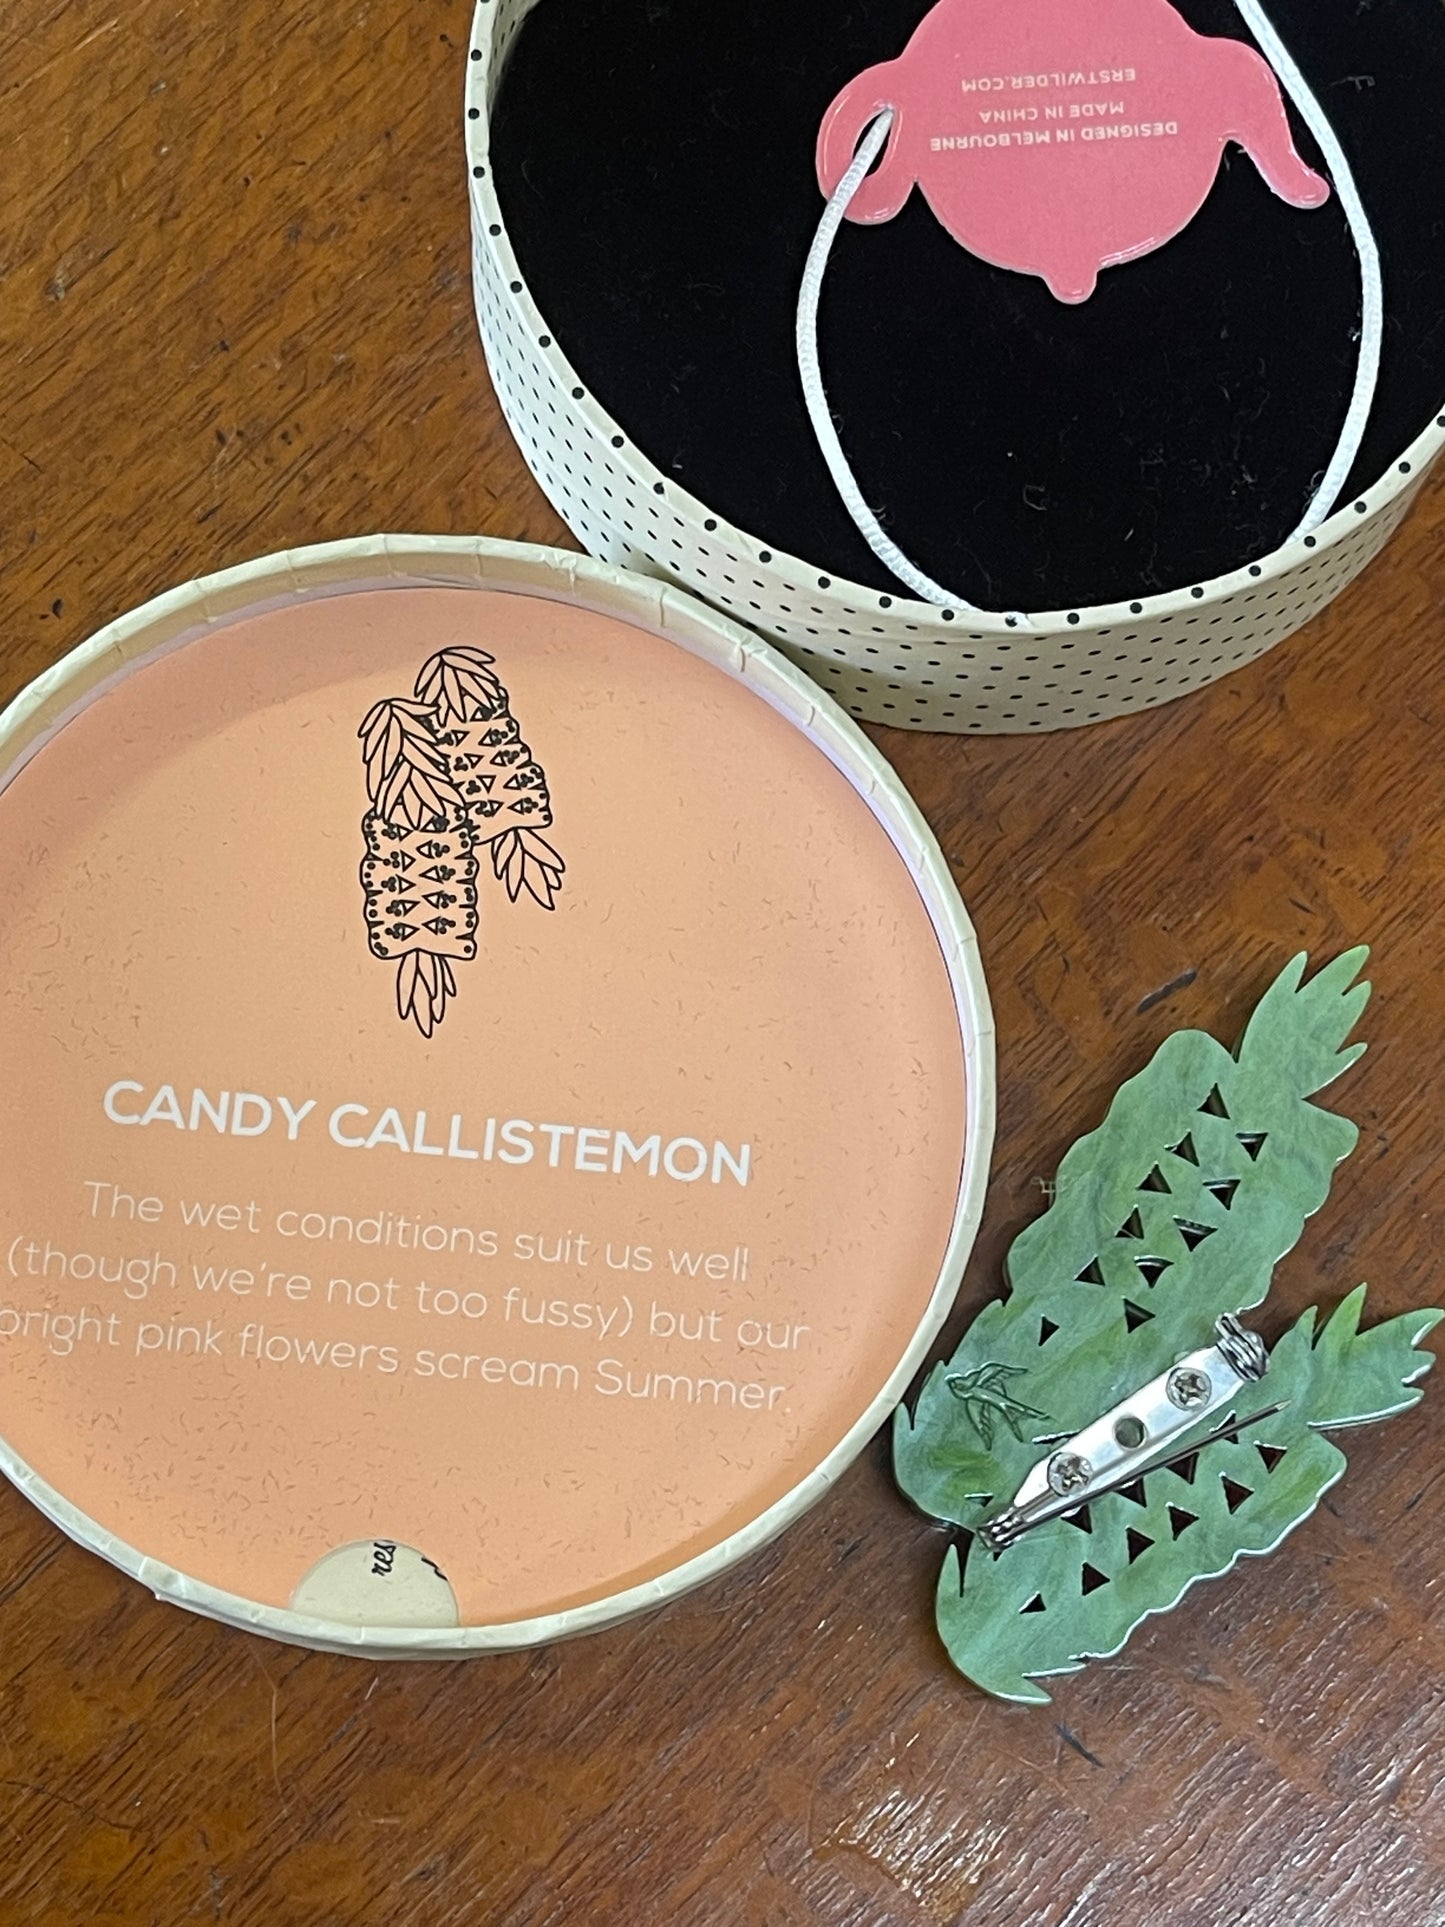 Candy Callistemon Brooch by Erstwilder and Carmen Hui (2018)